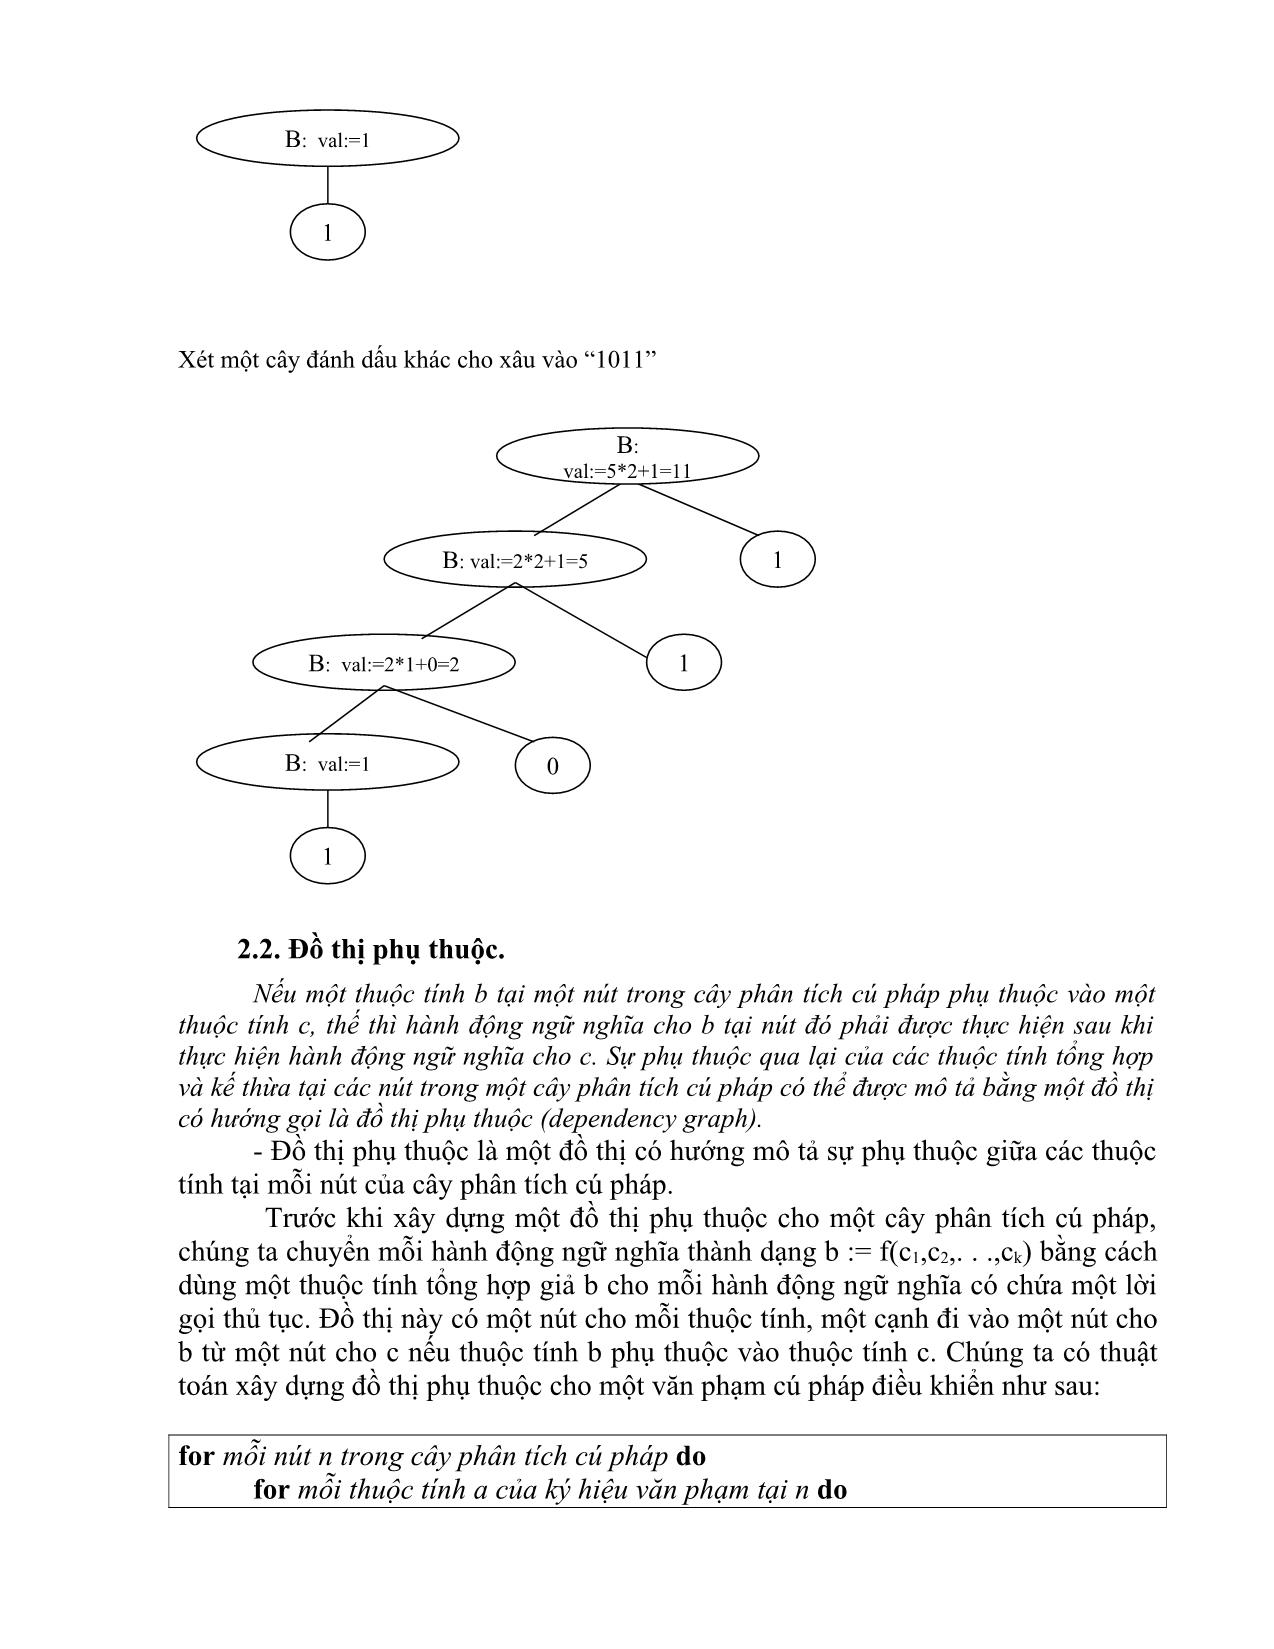 Giáo trình Chương trình dịch (Phần 2) trang 5